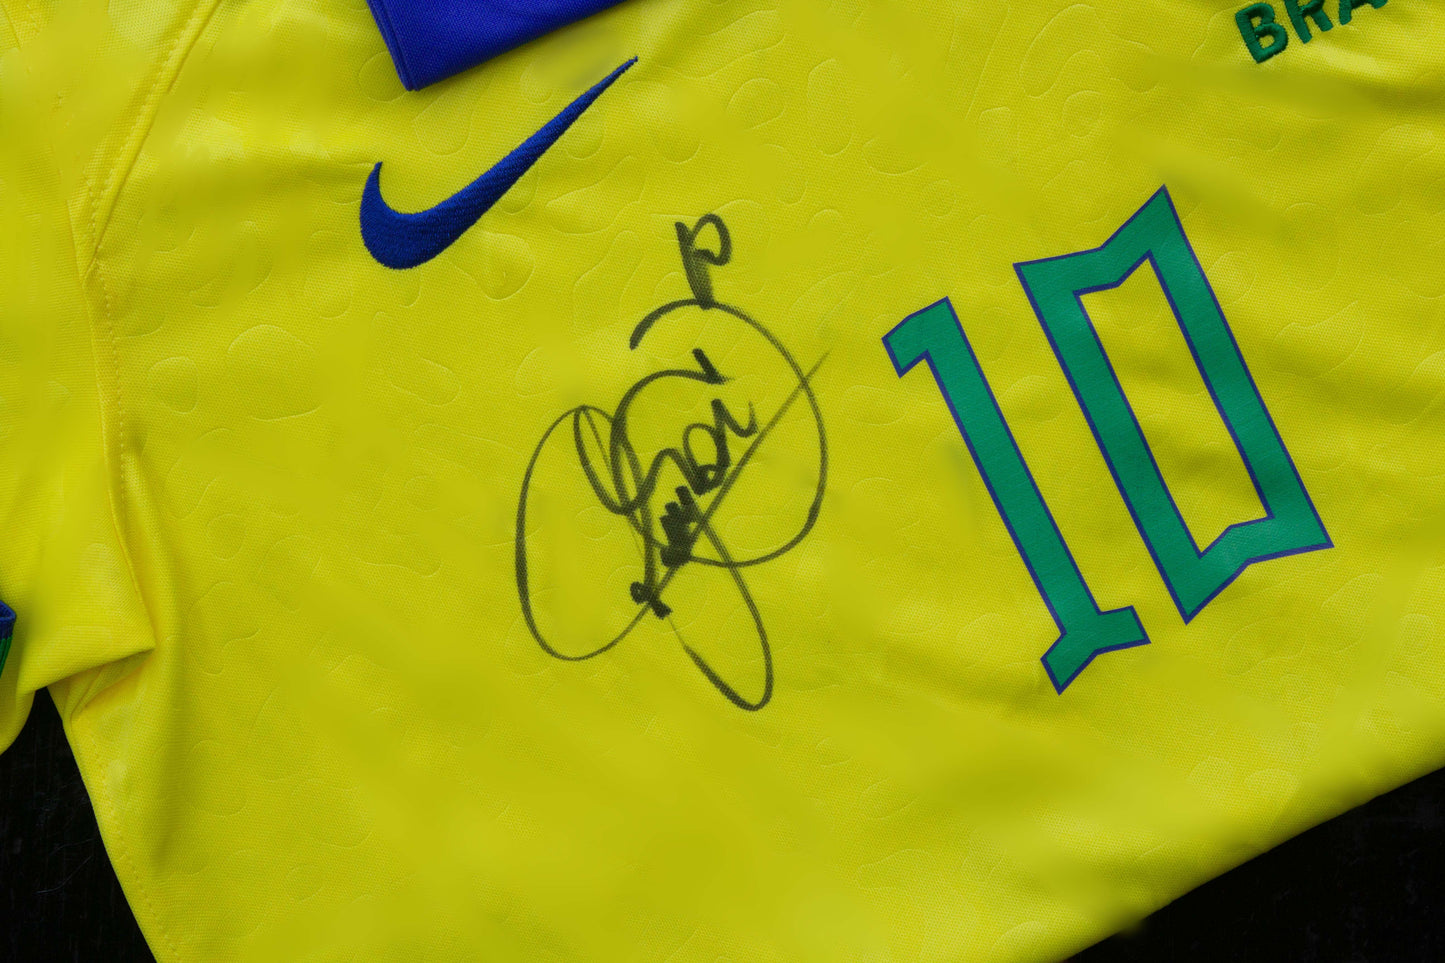 Camisa Amarela Exclusiva da Copa do Mundo Qatar 2022. Assinado por Neymar